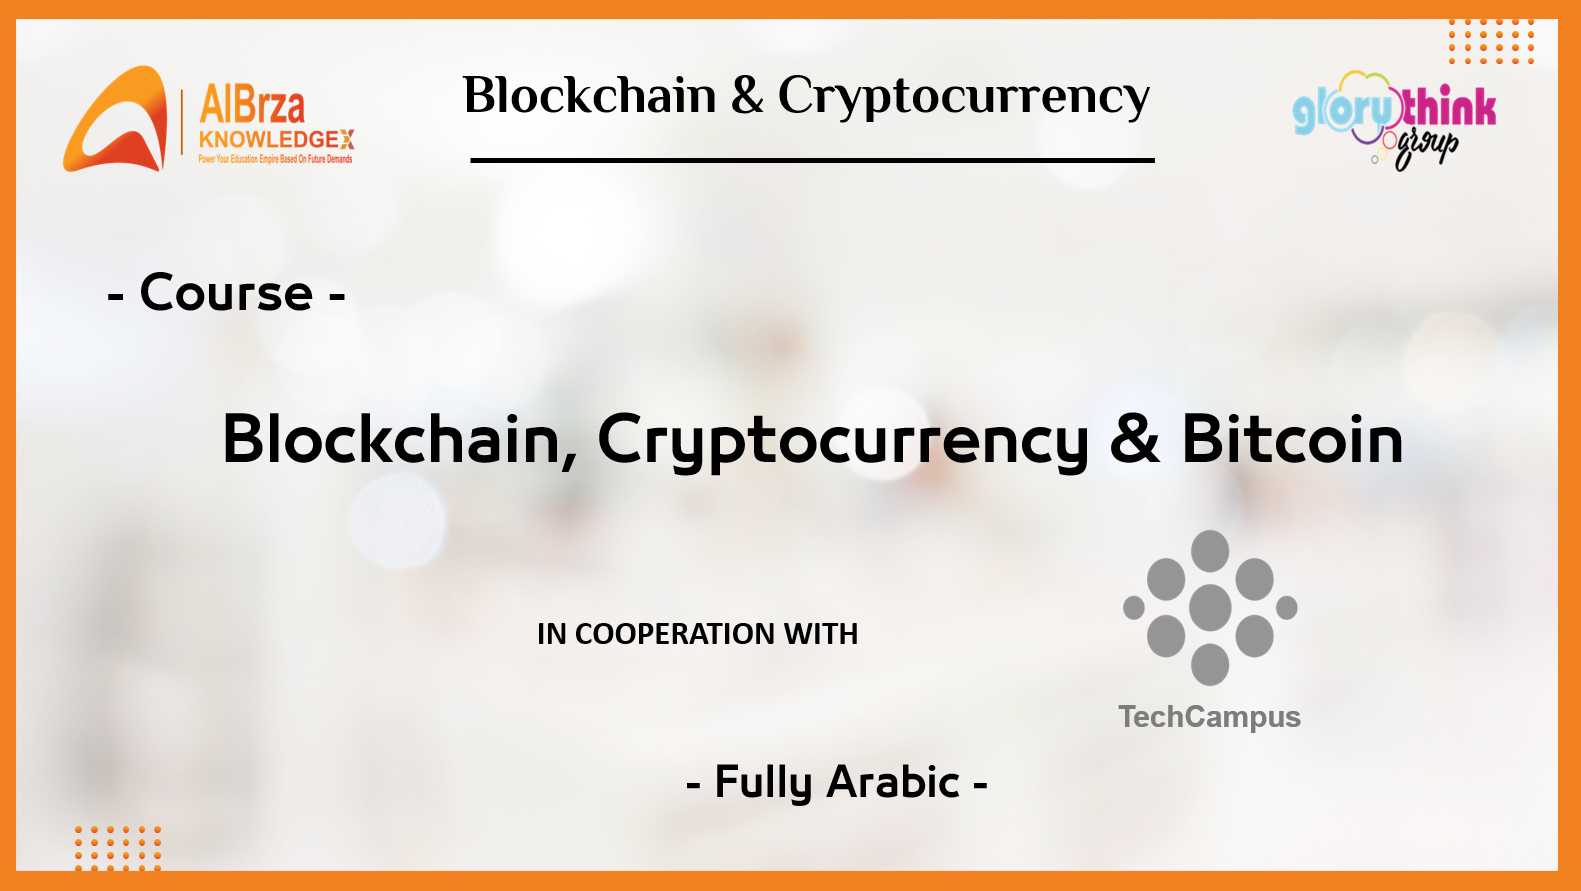 Blockchain & Bitcoin Training course in Arabic